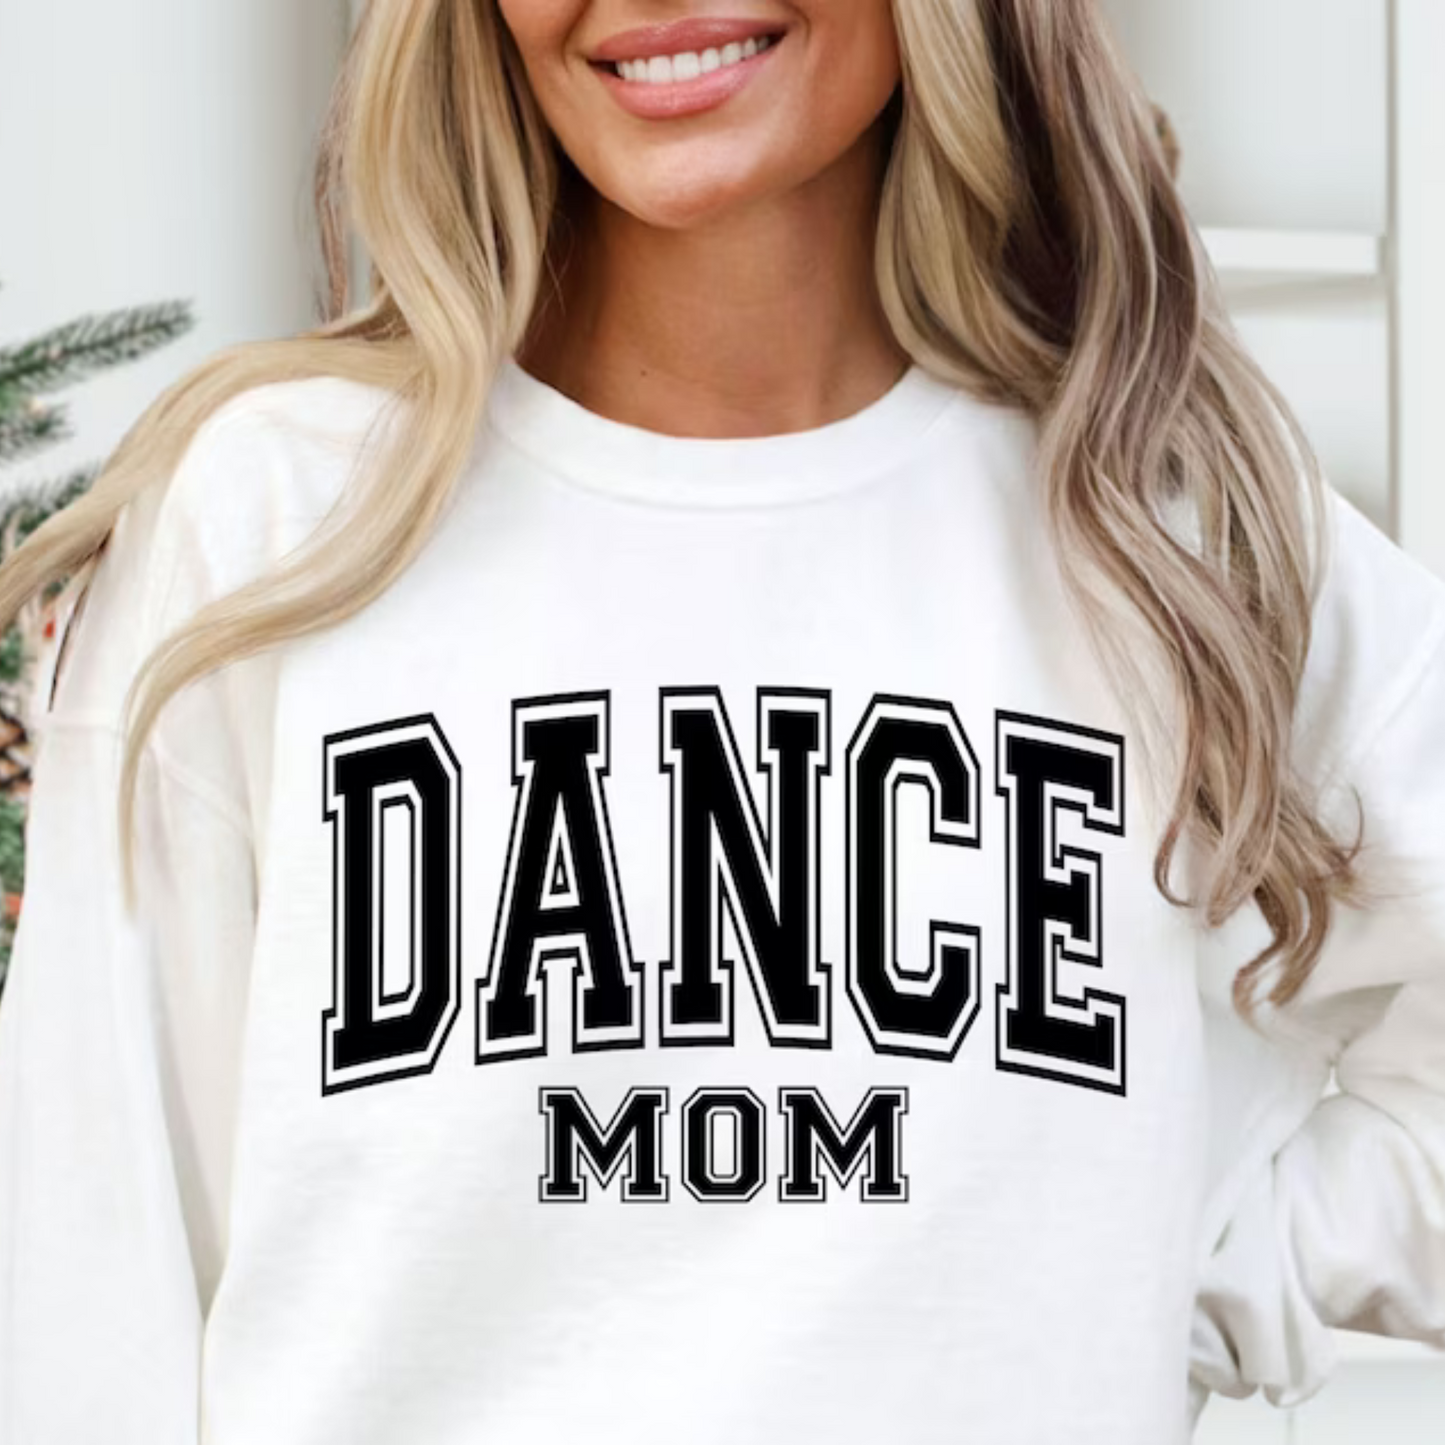 Tanzmutter - Support-Shirt für die Tanzveranstaltung